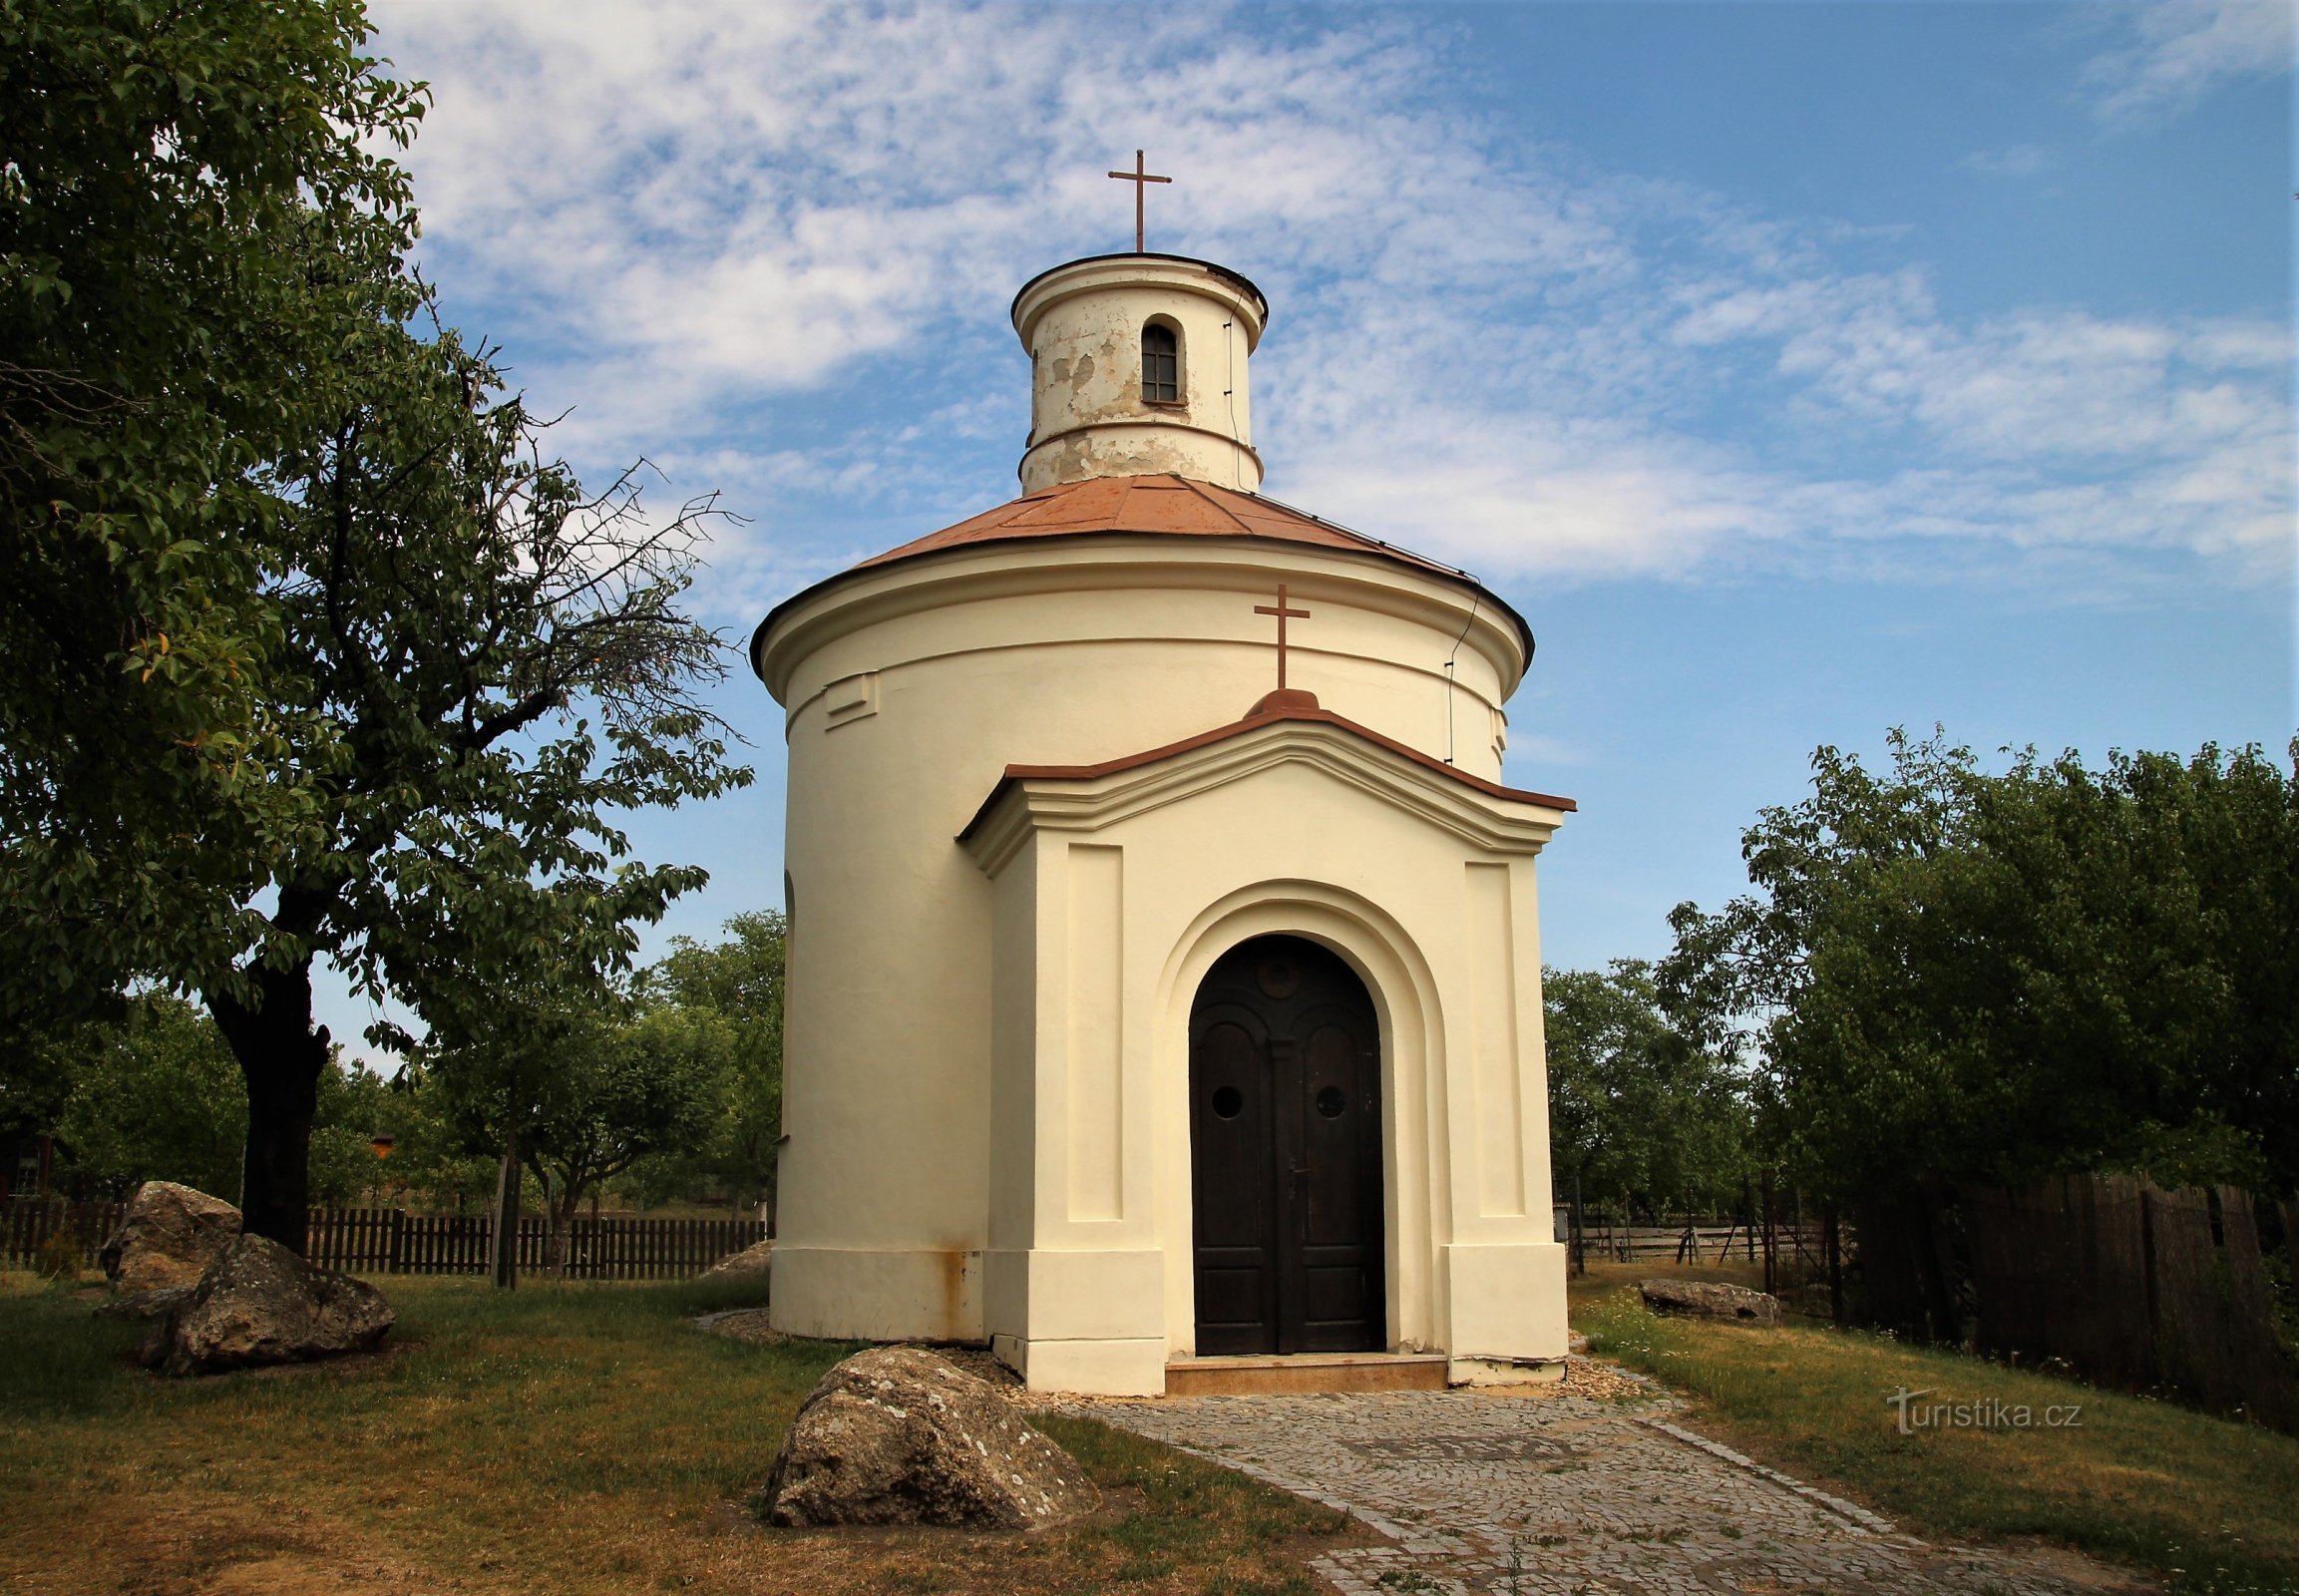 Újezd ​​​​lângă Brno - capela Sf. Antonie de Padova